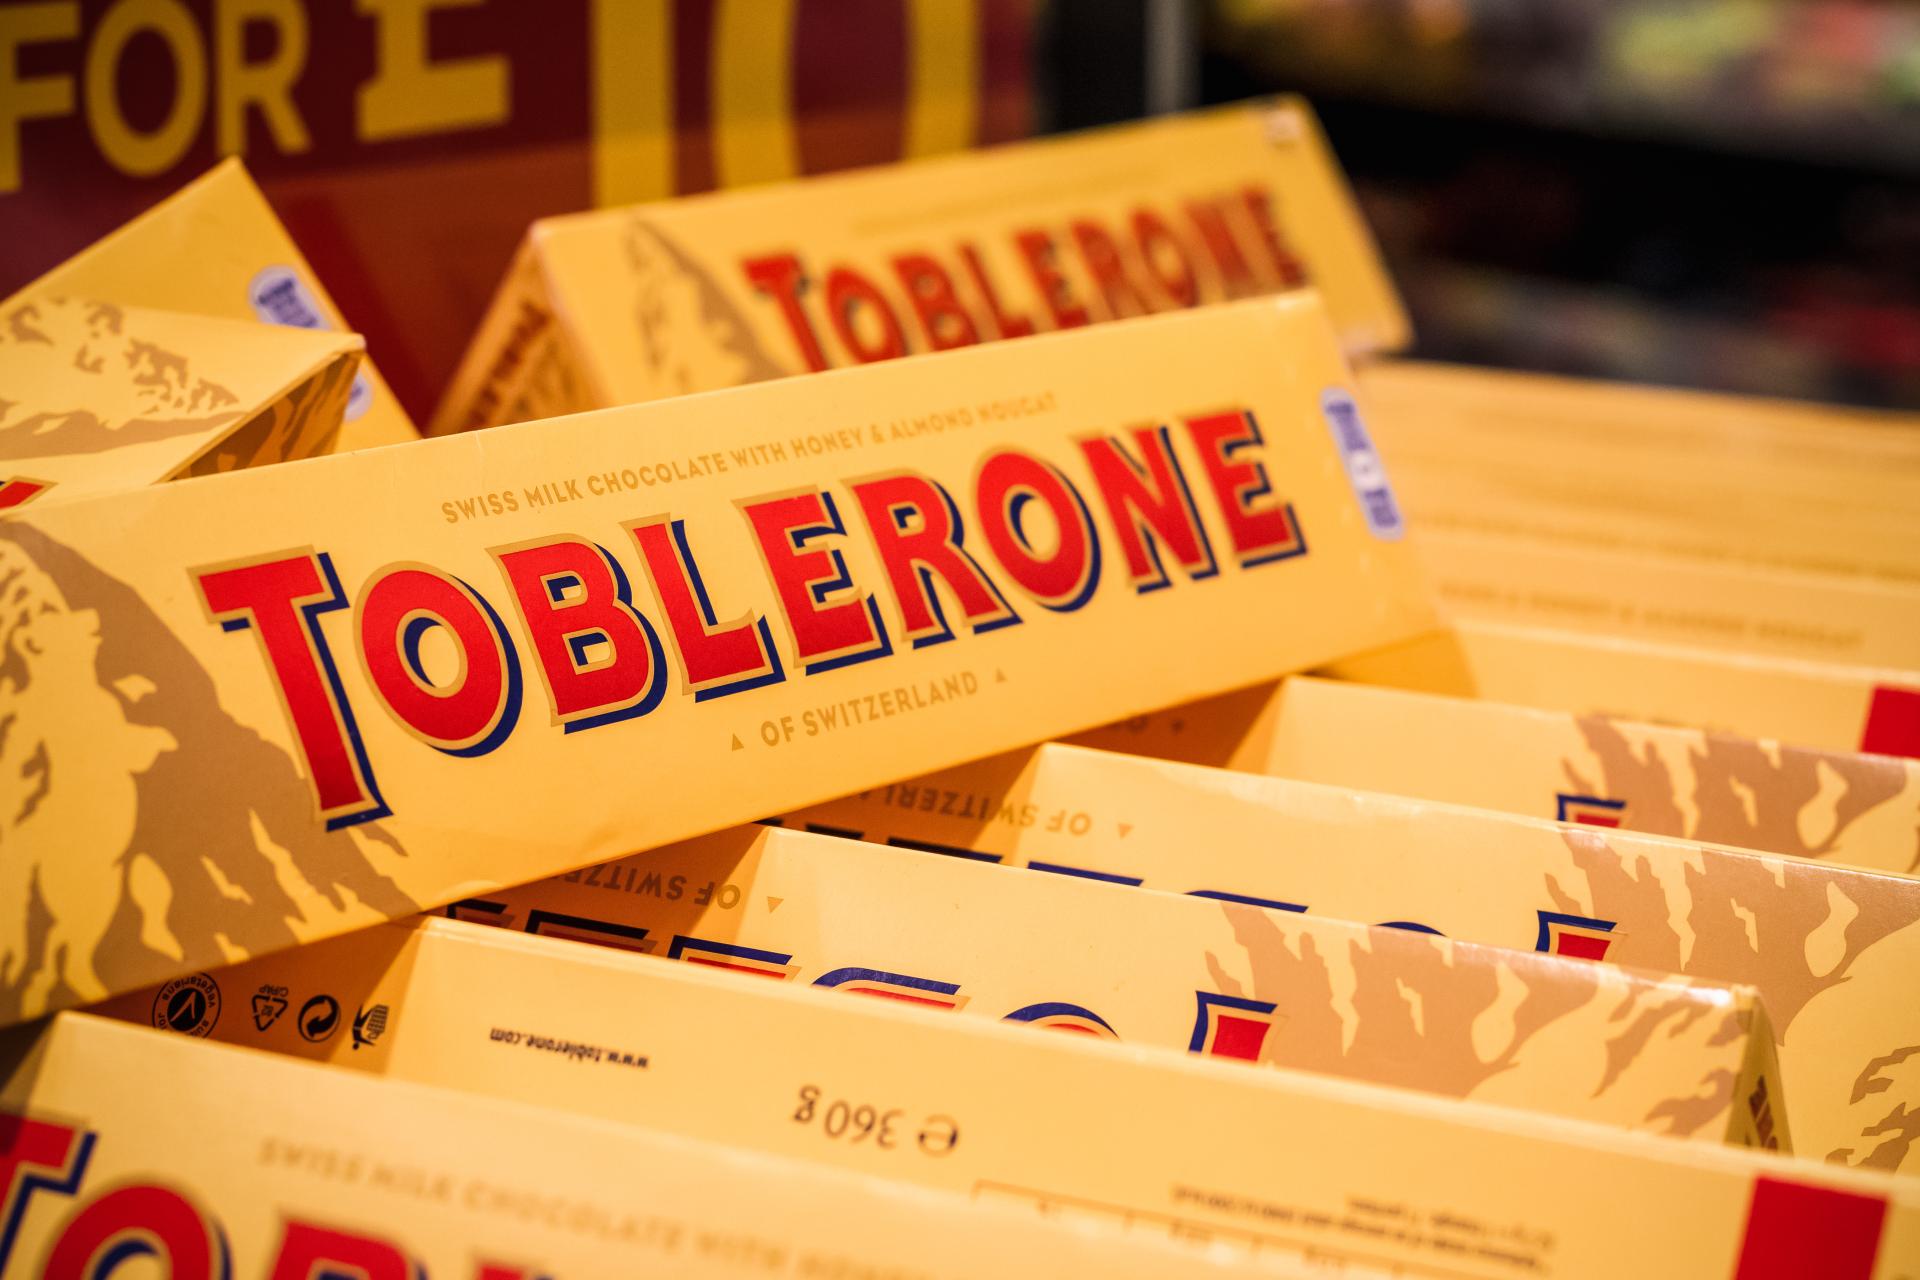 Švicarska proizvođaču kultne čokolade zadala težak udarac! Toblerone više nikad neće biti isti